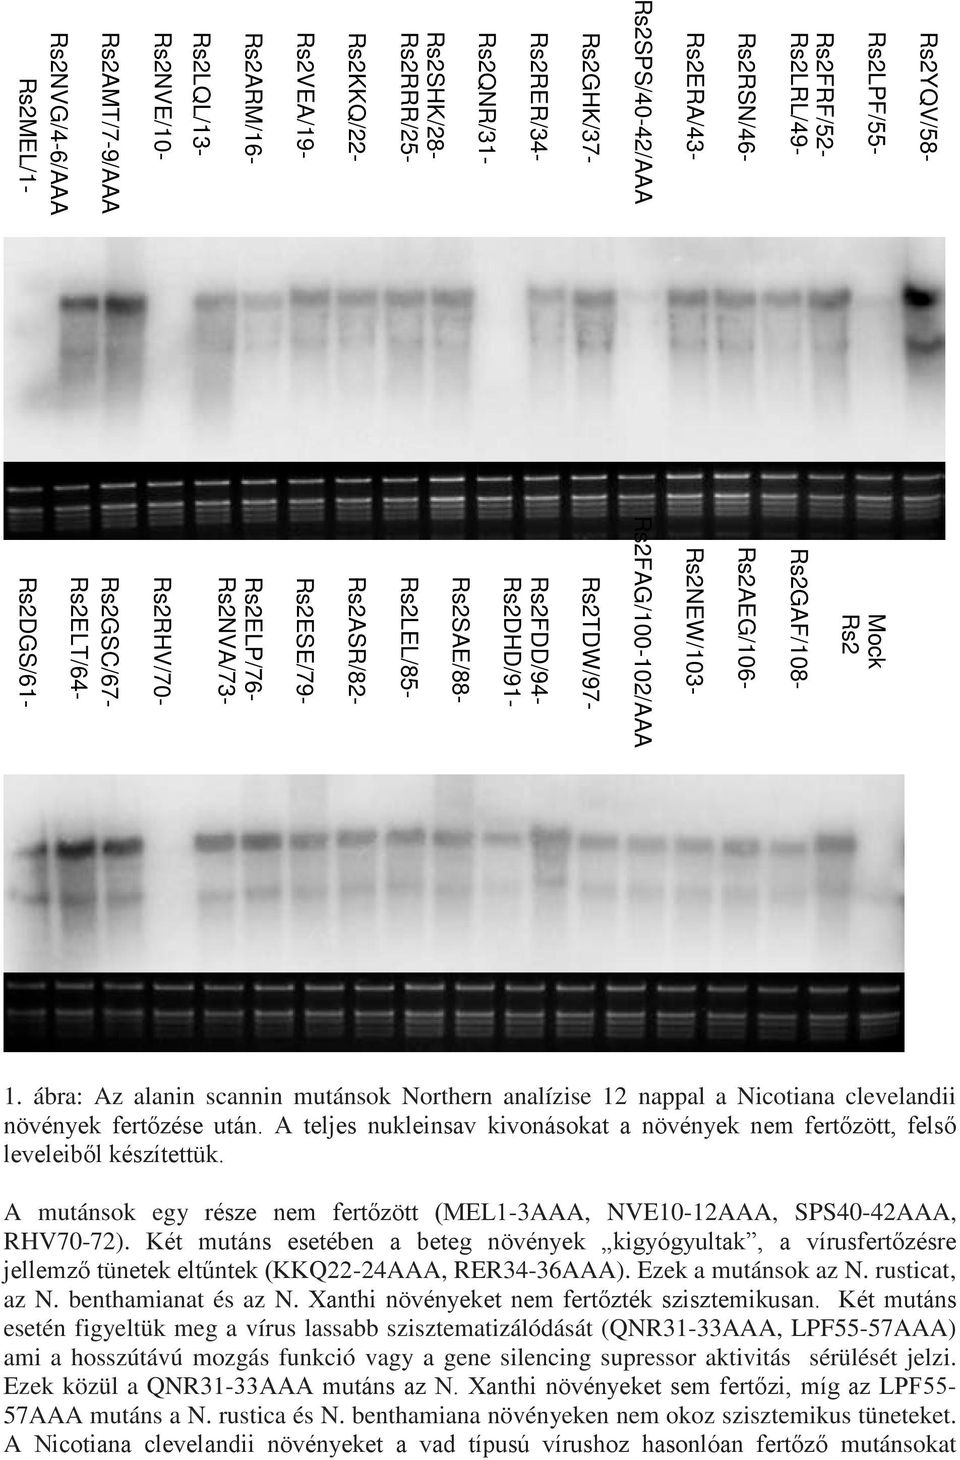 Rs2DHD/91- Rs2TDW/97- Rs2NEW/103- Rs2AEG/106-1. ábra: Az alanin scannin mutánsok Northern analízise 12 nappal a Nicotiana clevelandii növények fertőzése után.